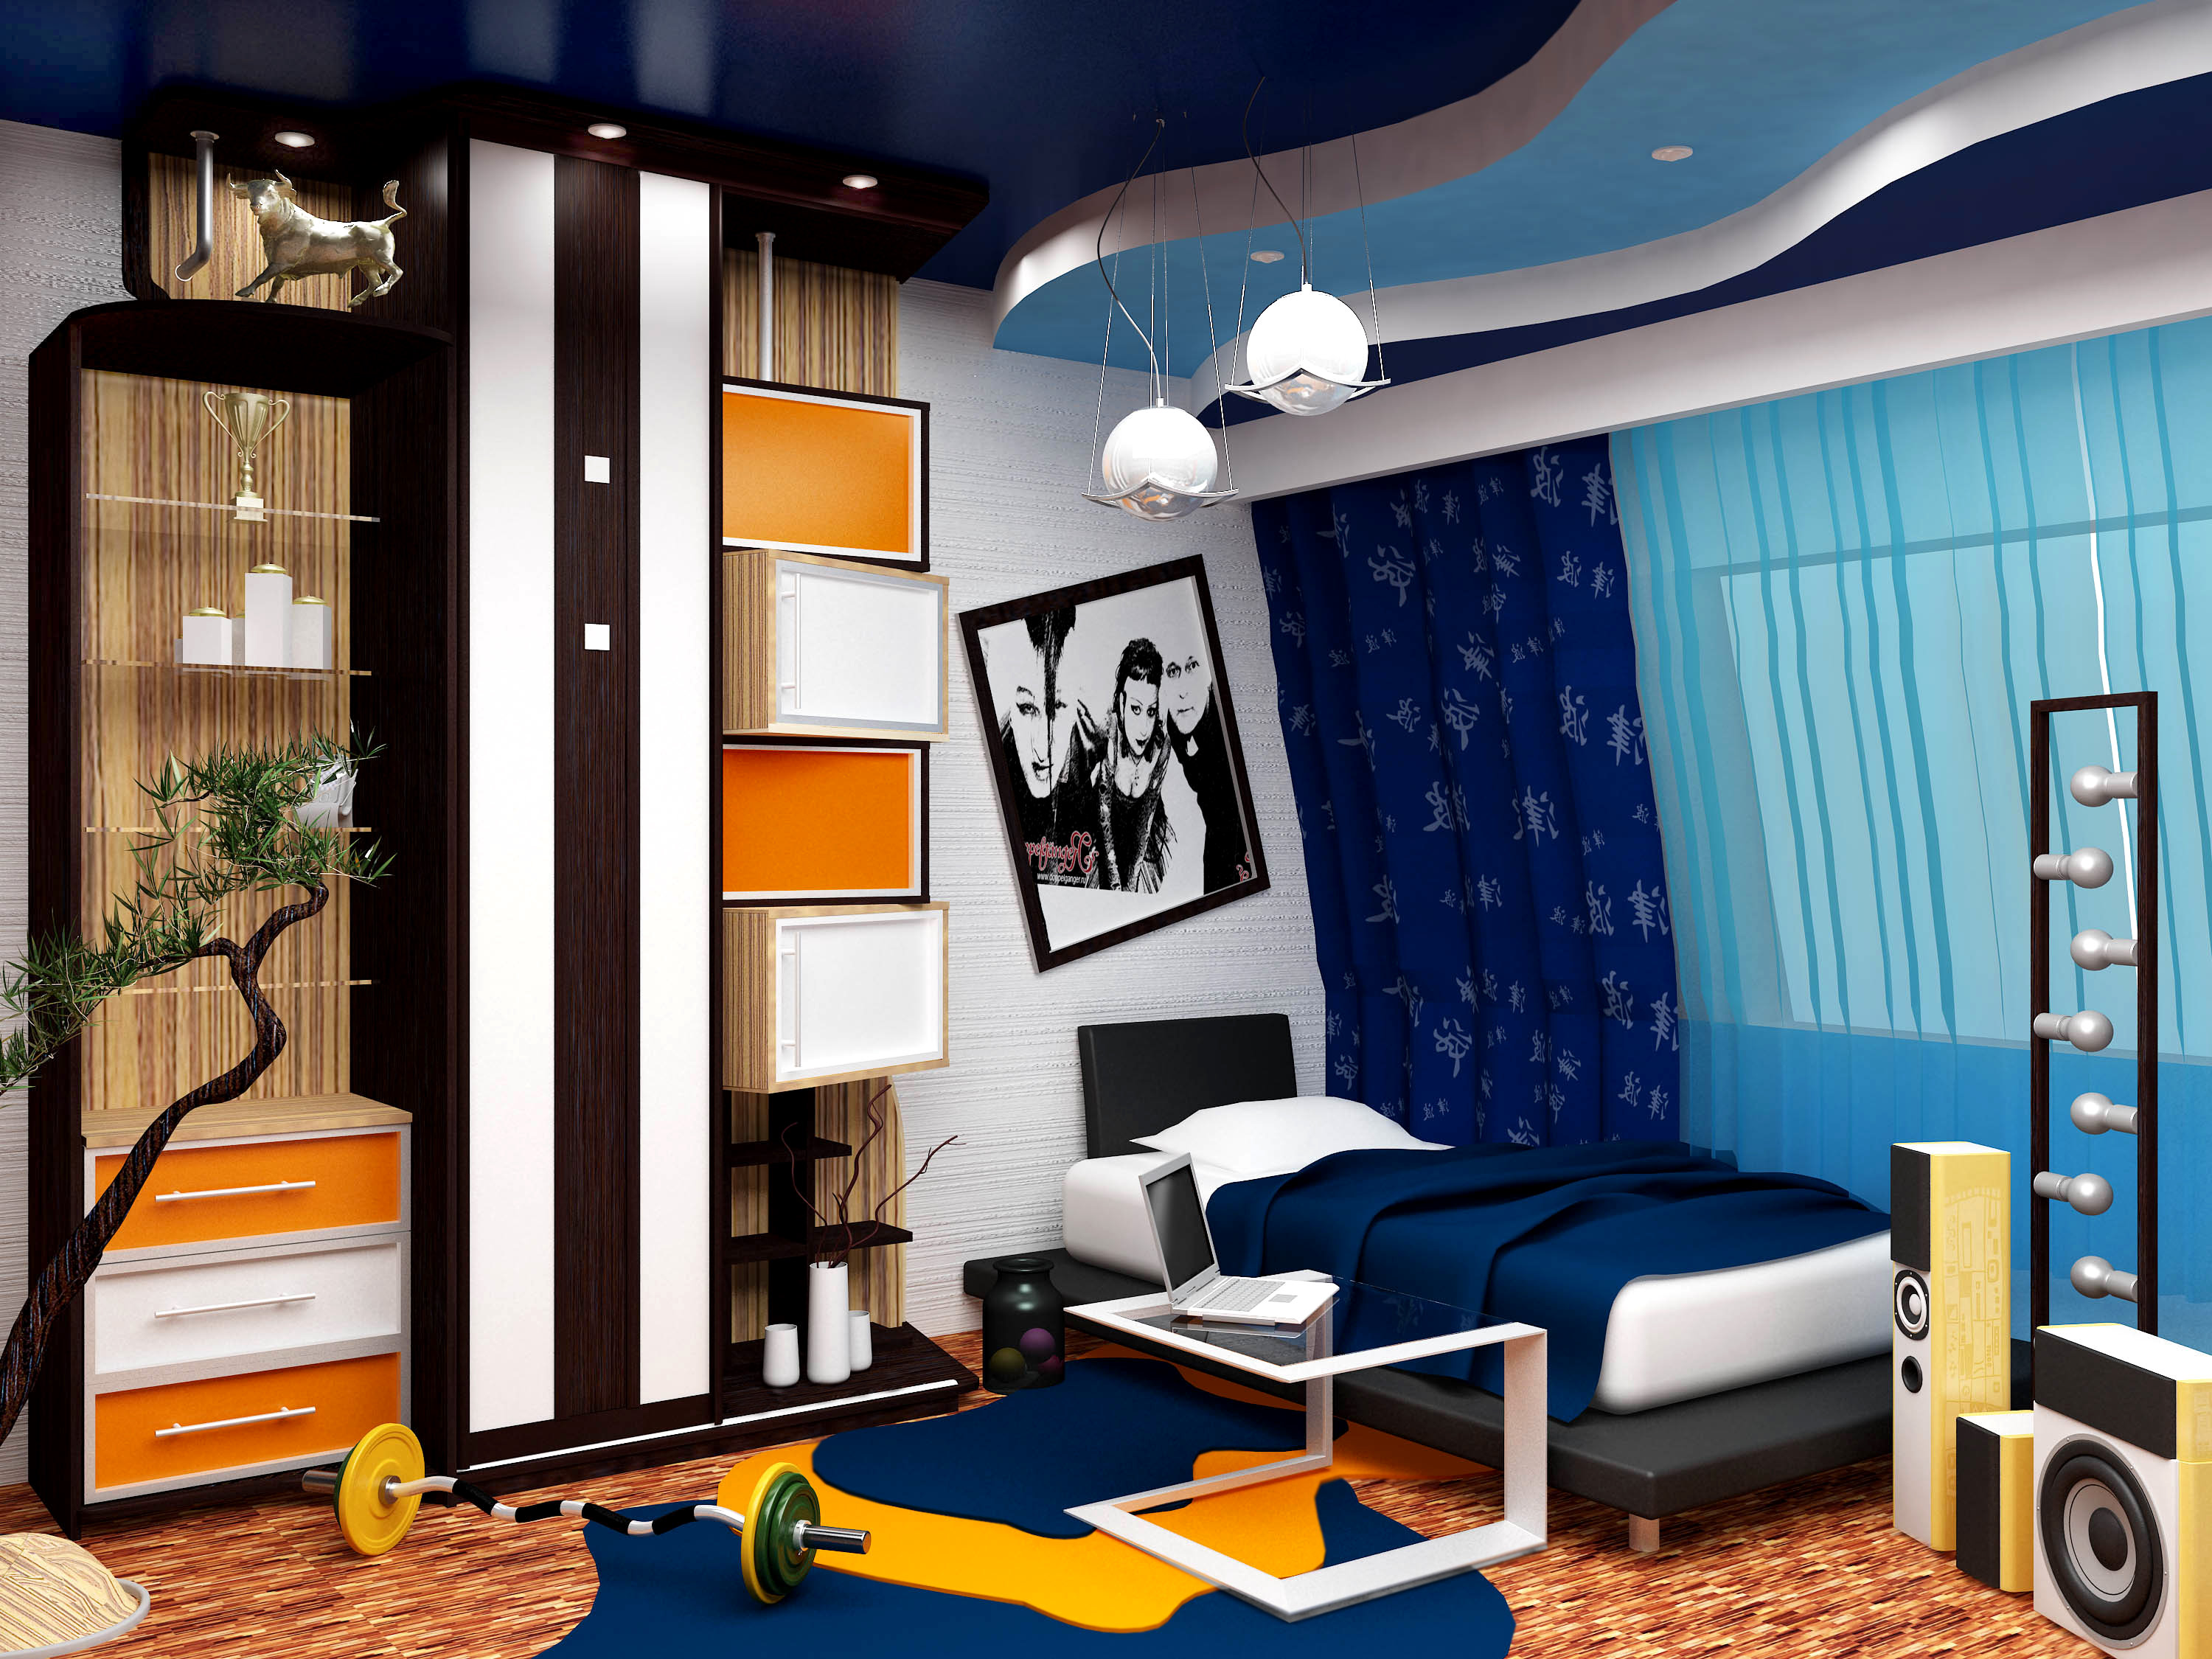 Дизайн комнаты для подростка мальчика » Картинки и фотографии дизайна .